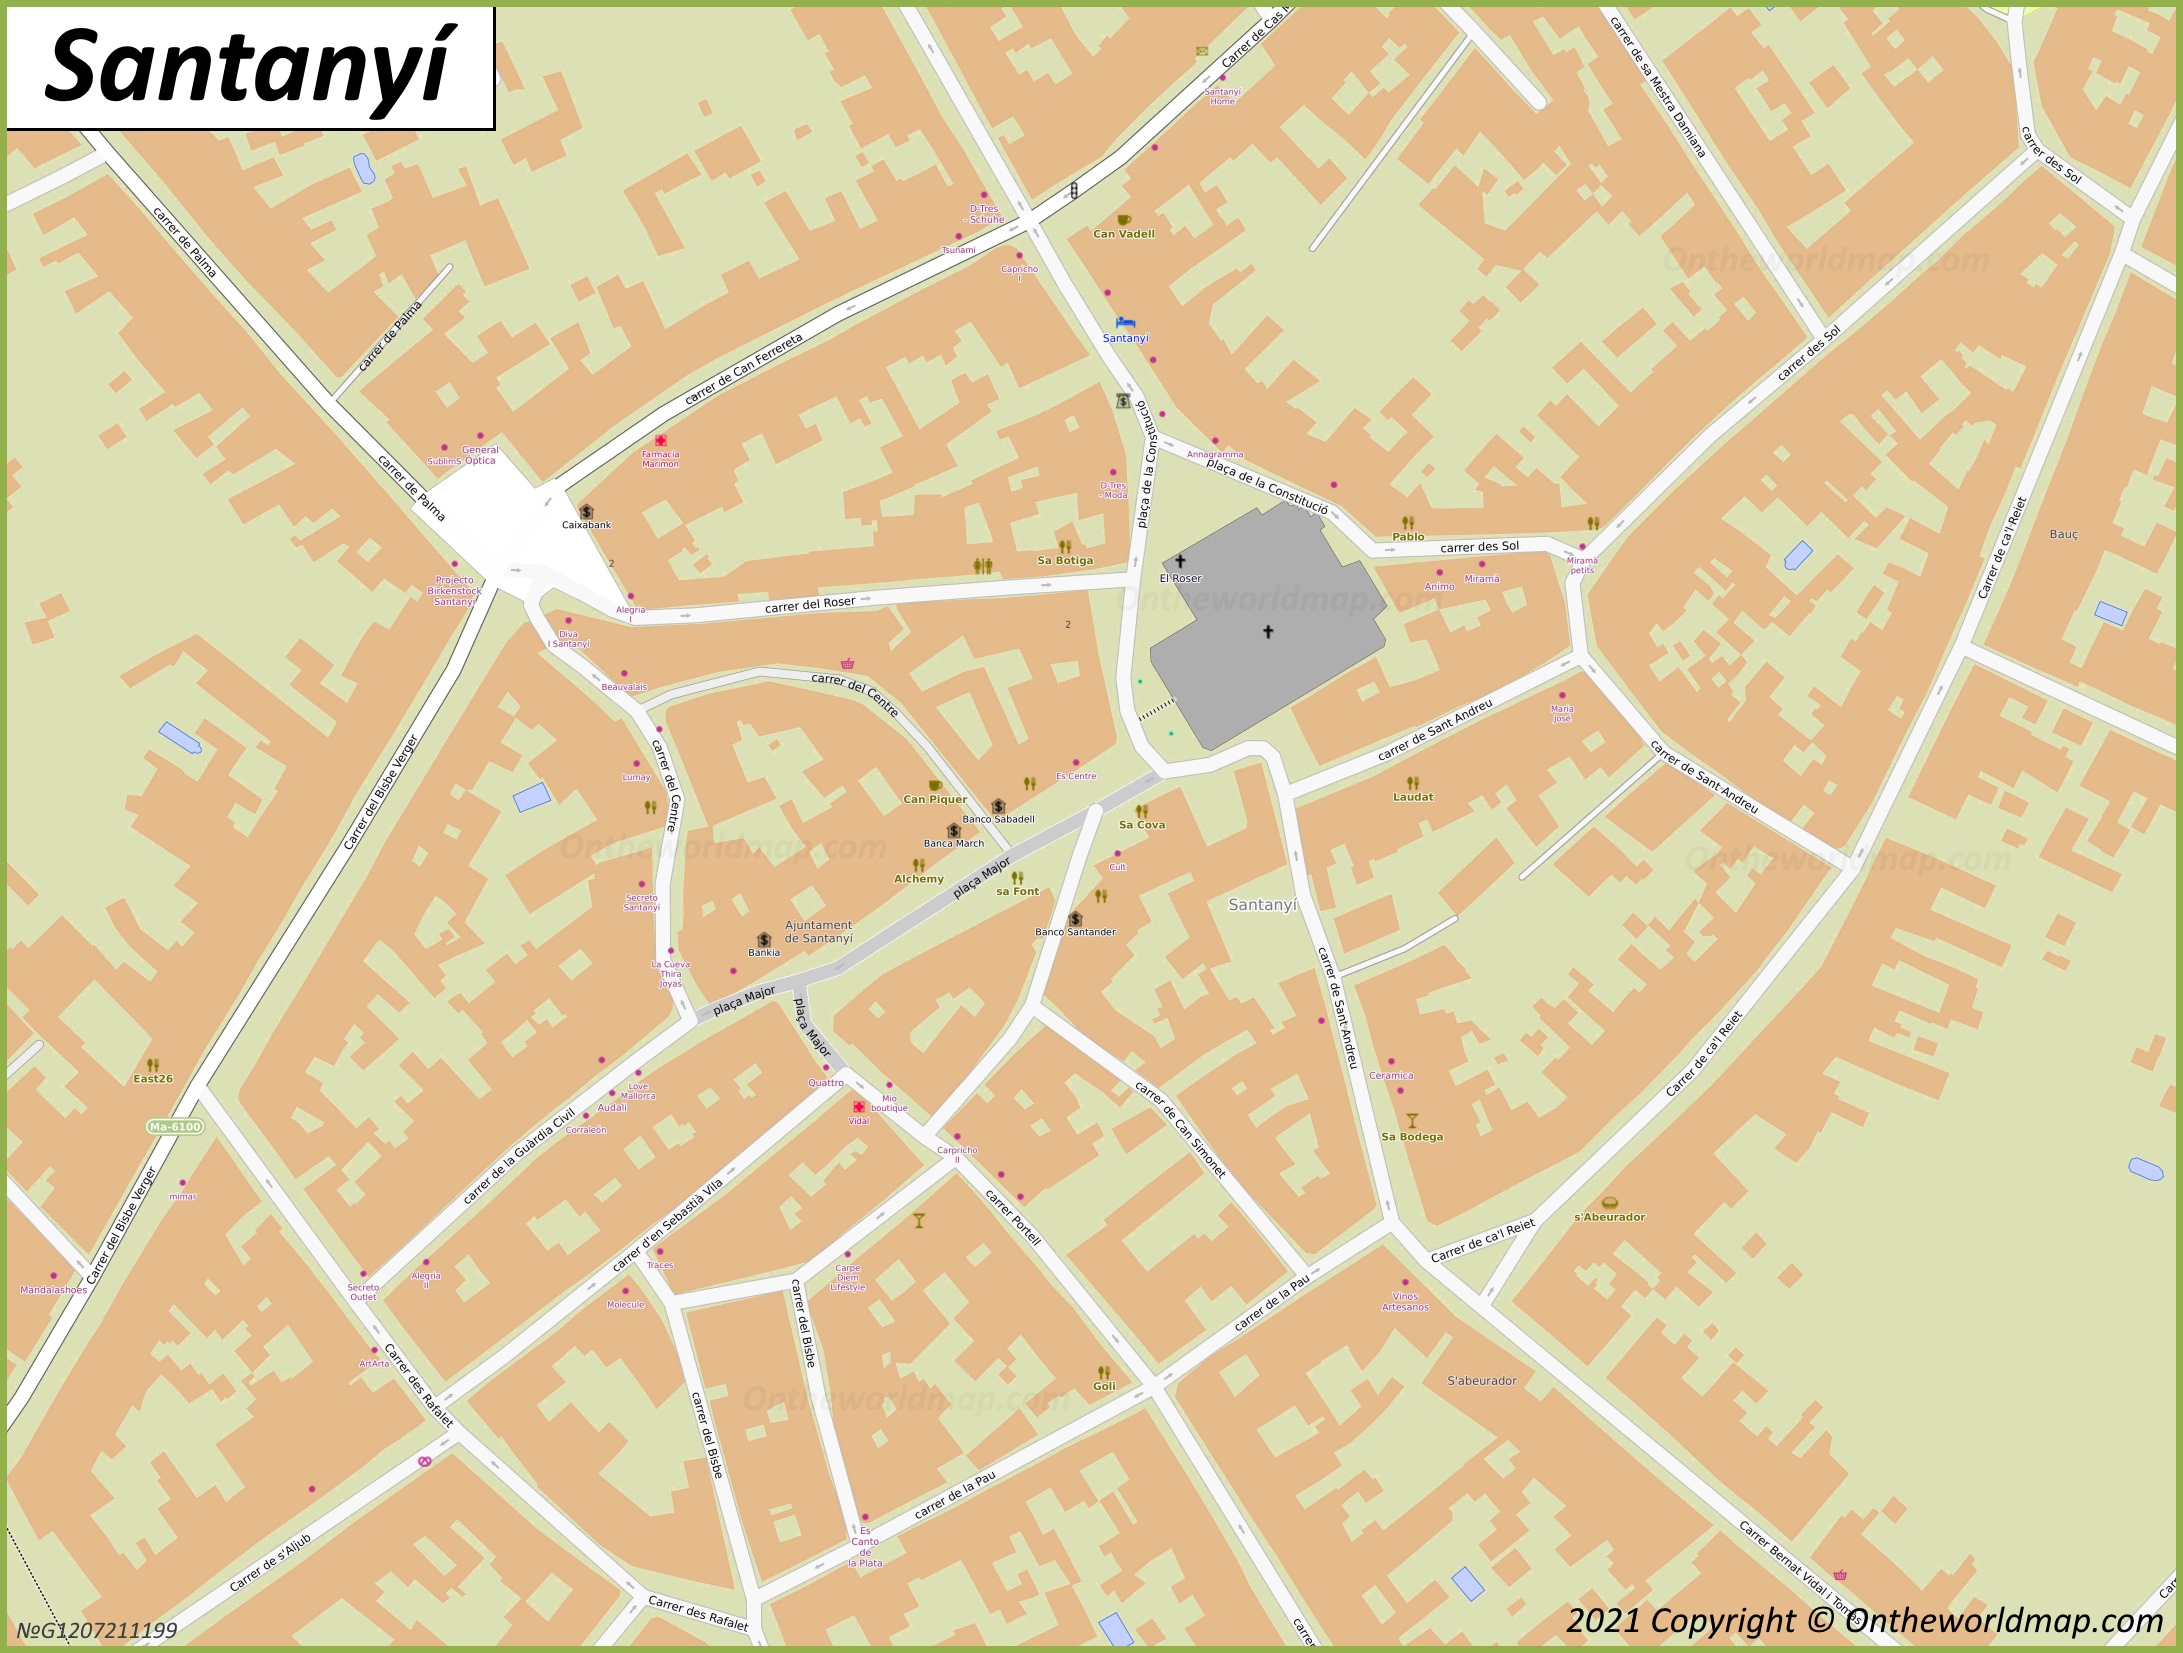 Santañí - Mapa de la Ciudad Vieja